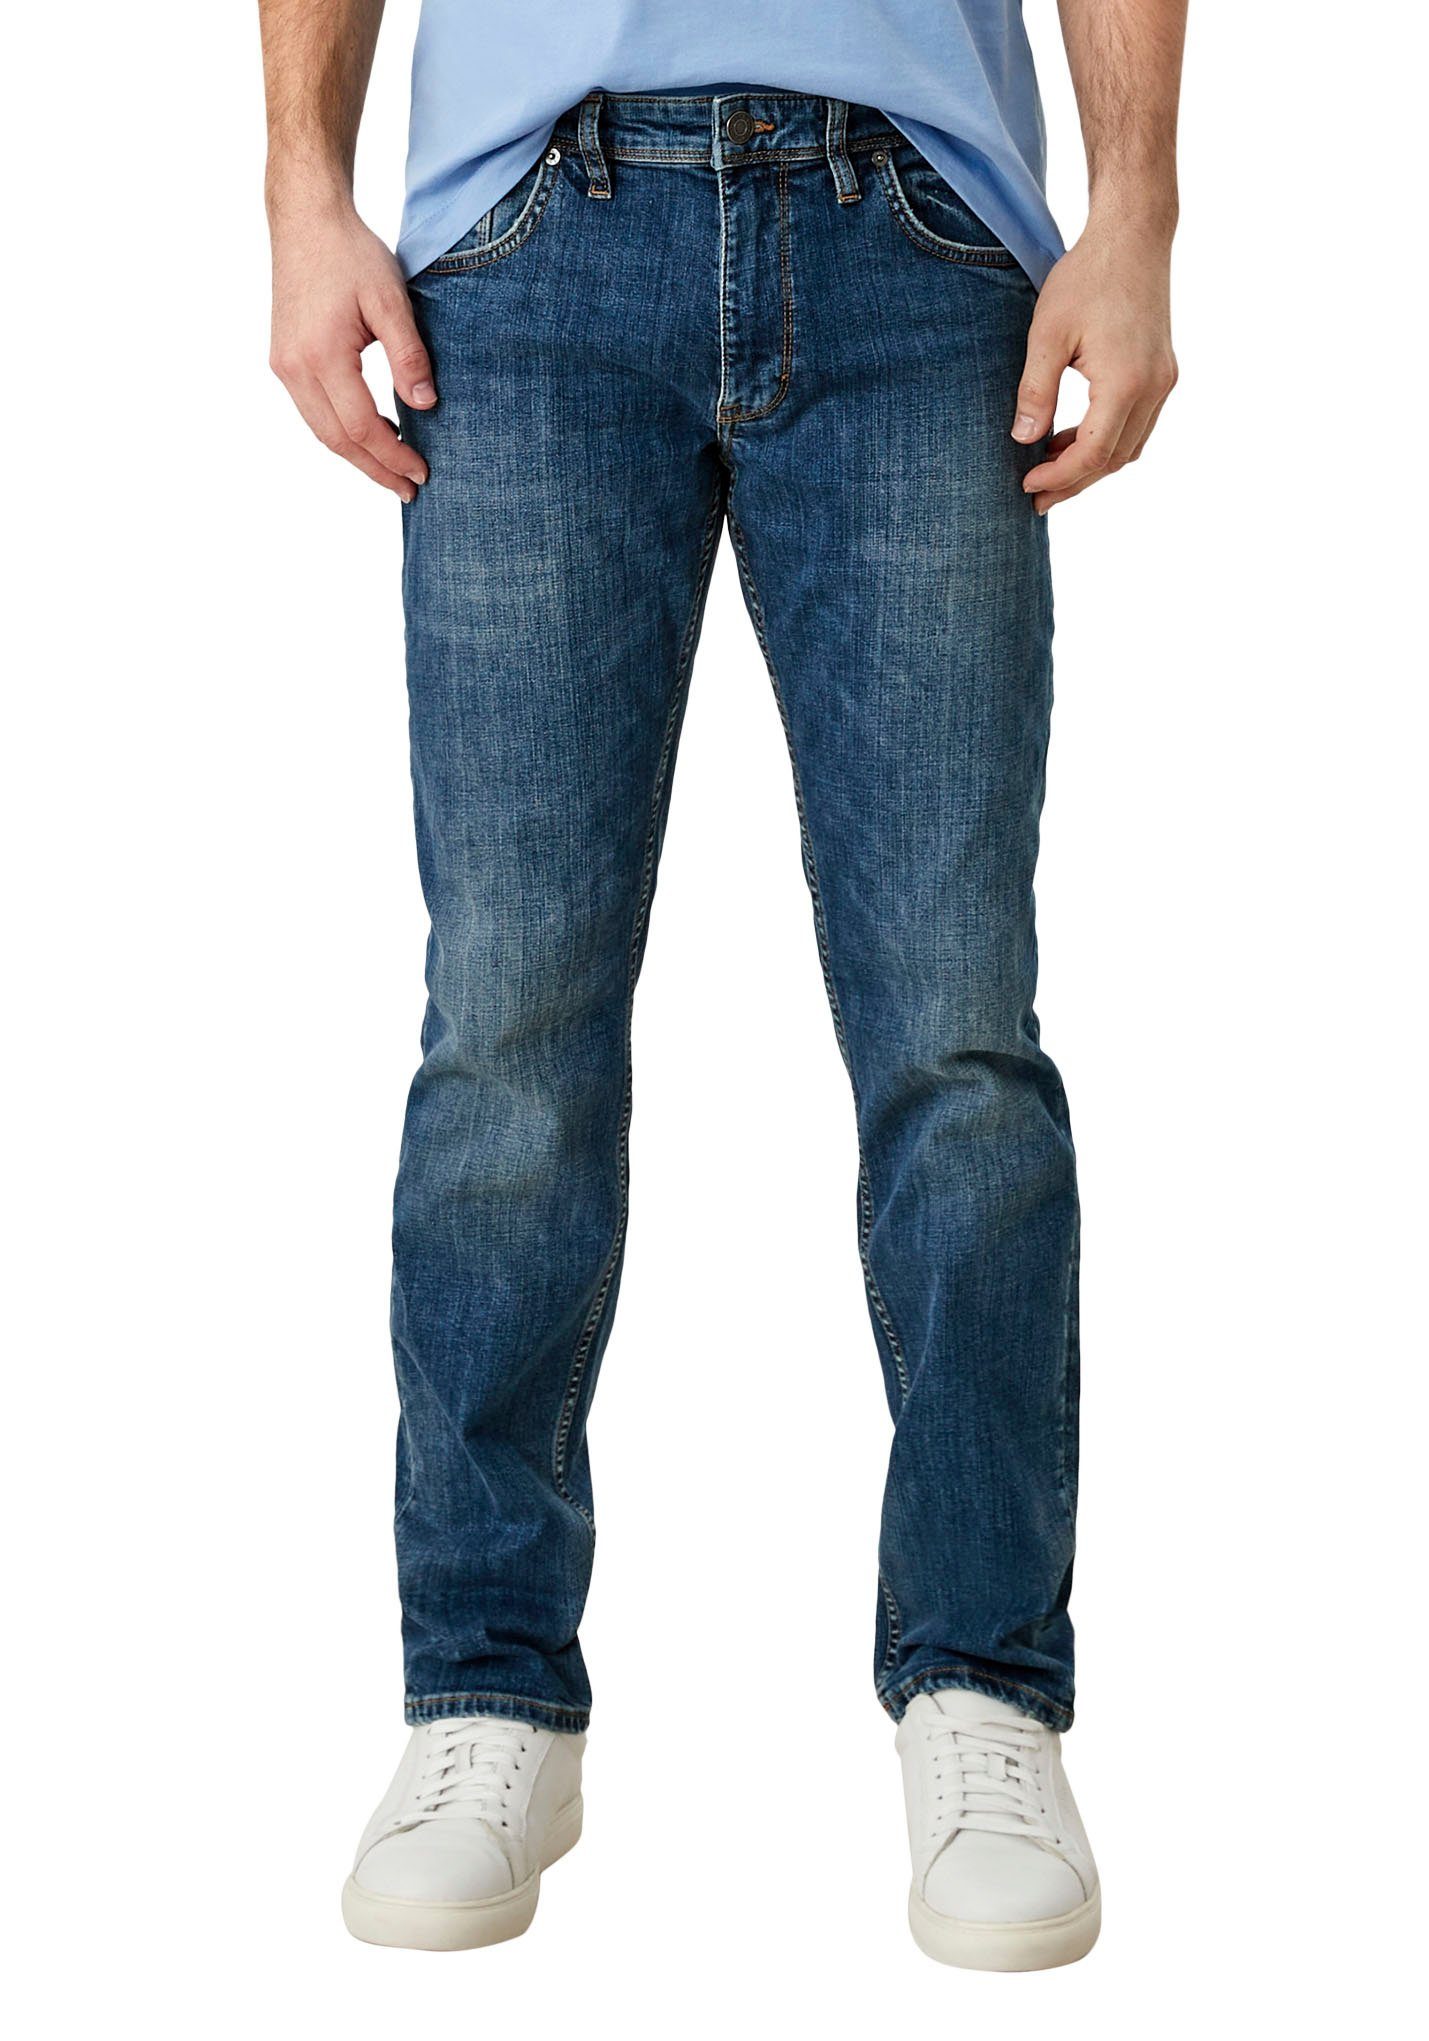 mit s.Oliver 5-Pocket-Jeans ozeanblau authentischer Waschung